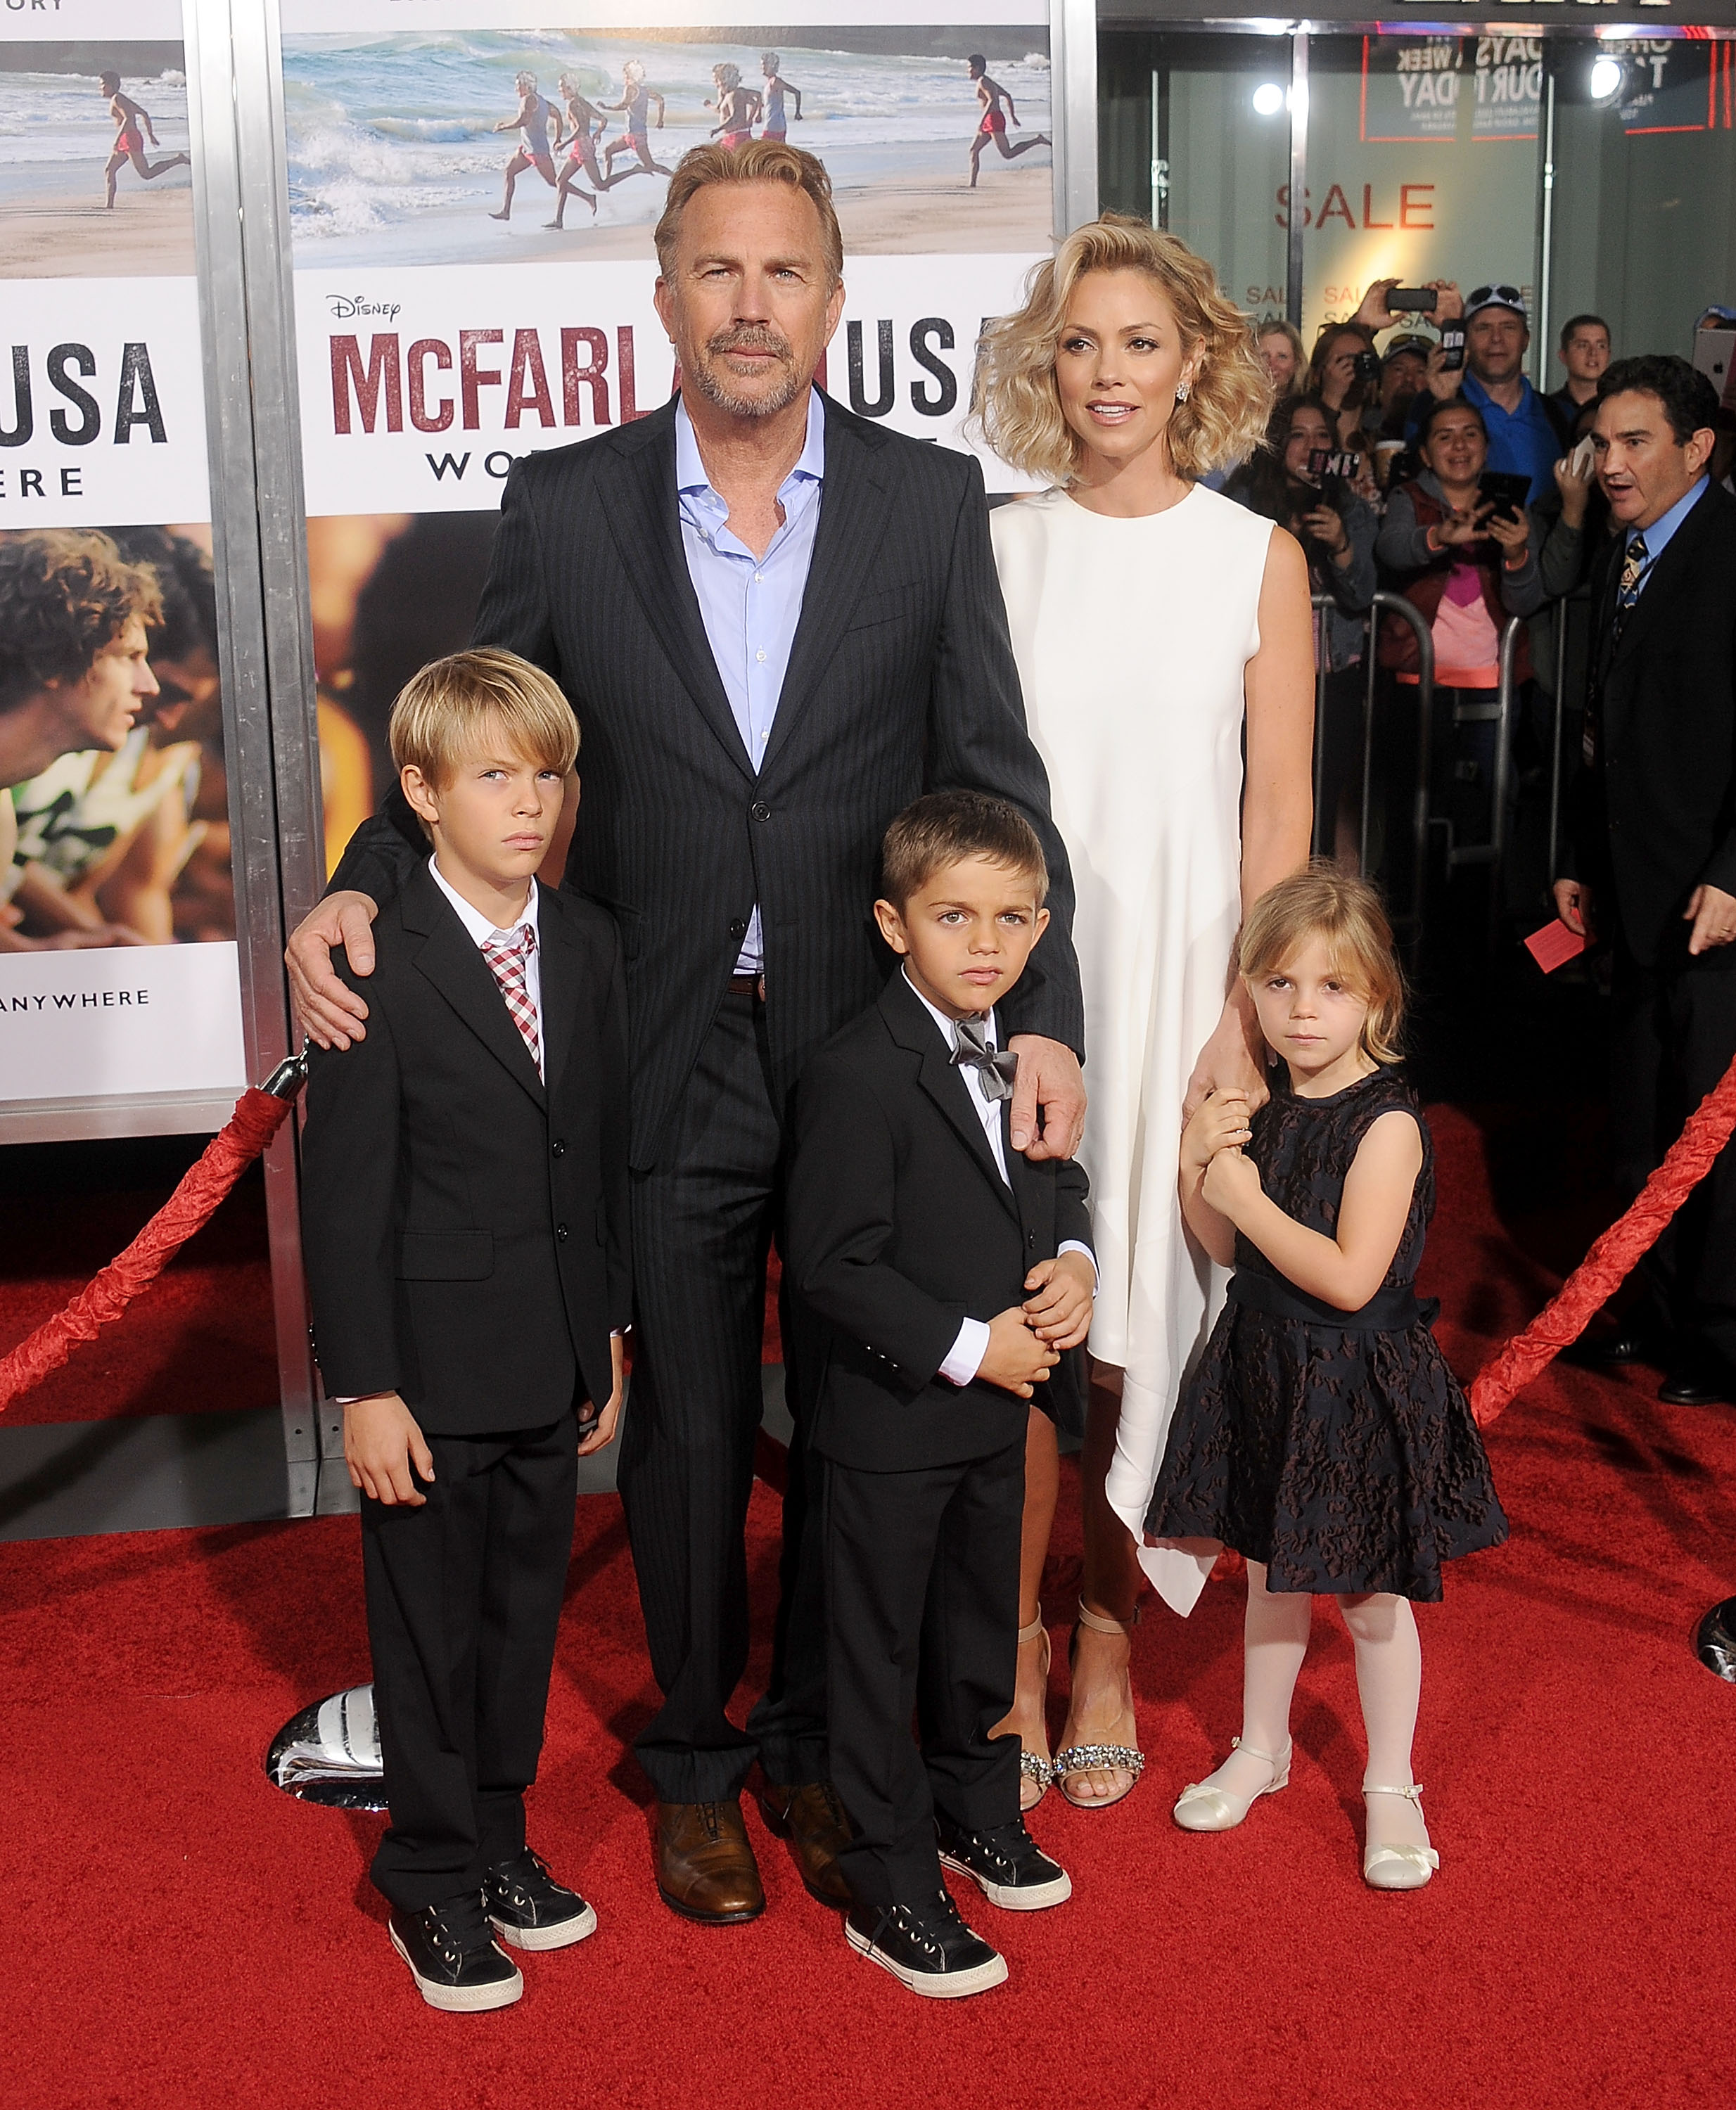 Kevin Costner, sa femme Christine Baumgartner, et ses enfants Grace Avery Costner, Hayes Logan Costner, et Cayden Wyatt Costner à la première mondiale de "McFarland, USA" le 9 février 2015, à Hollywood, Californie | Source : Getty Images